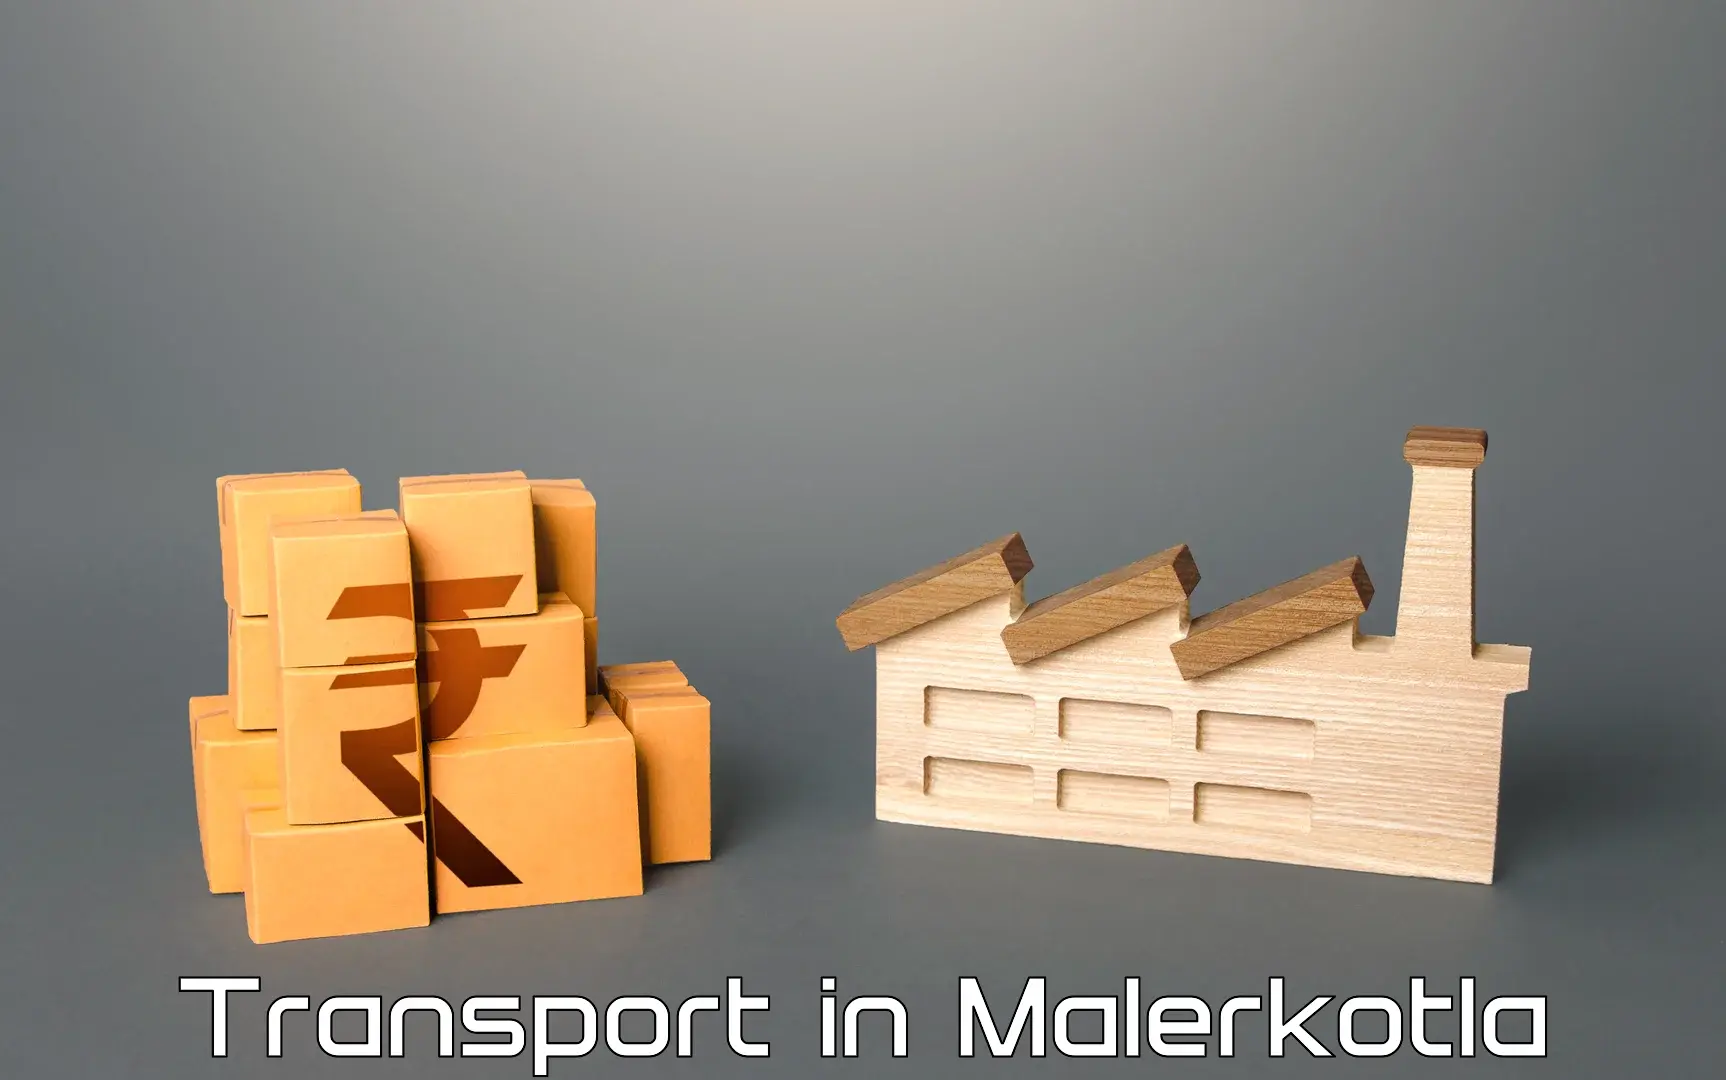 Transportation services in Malerkotla